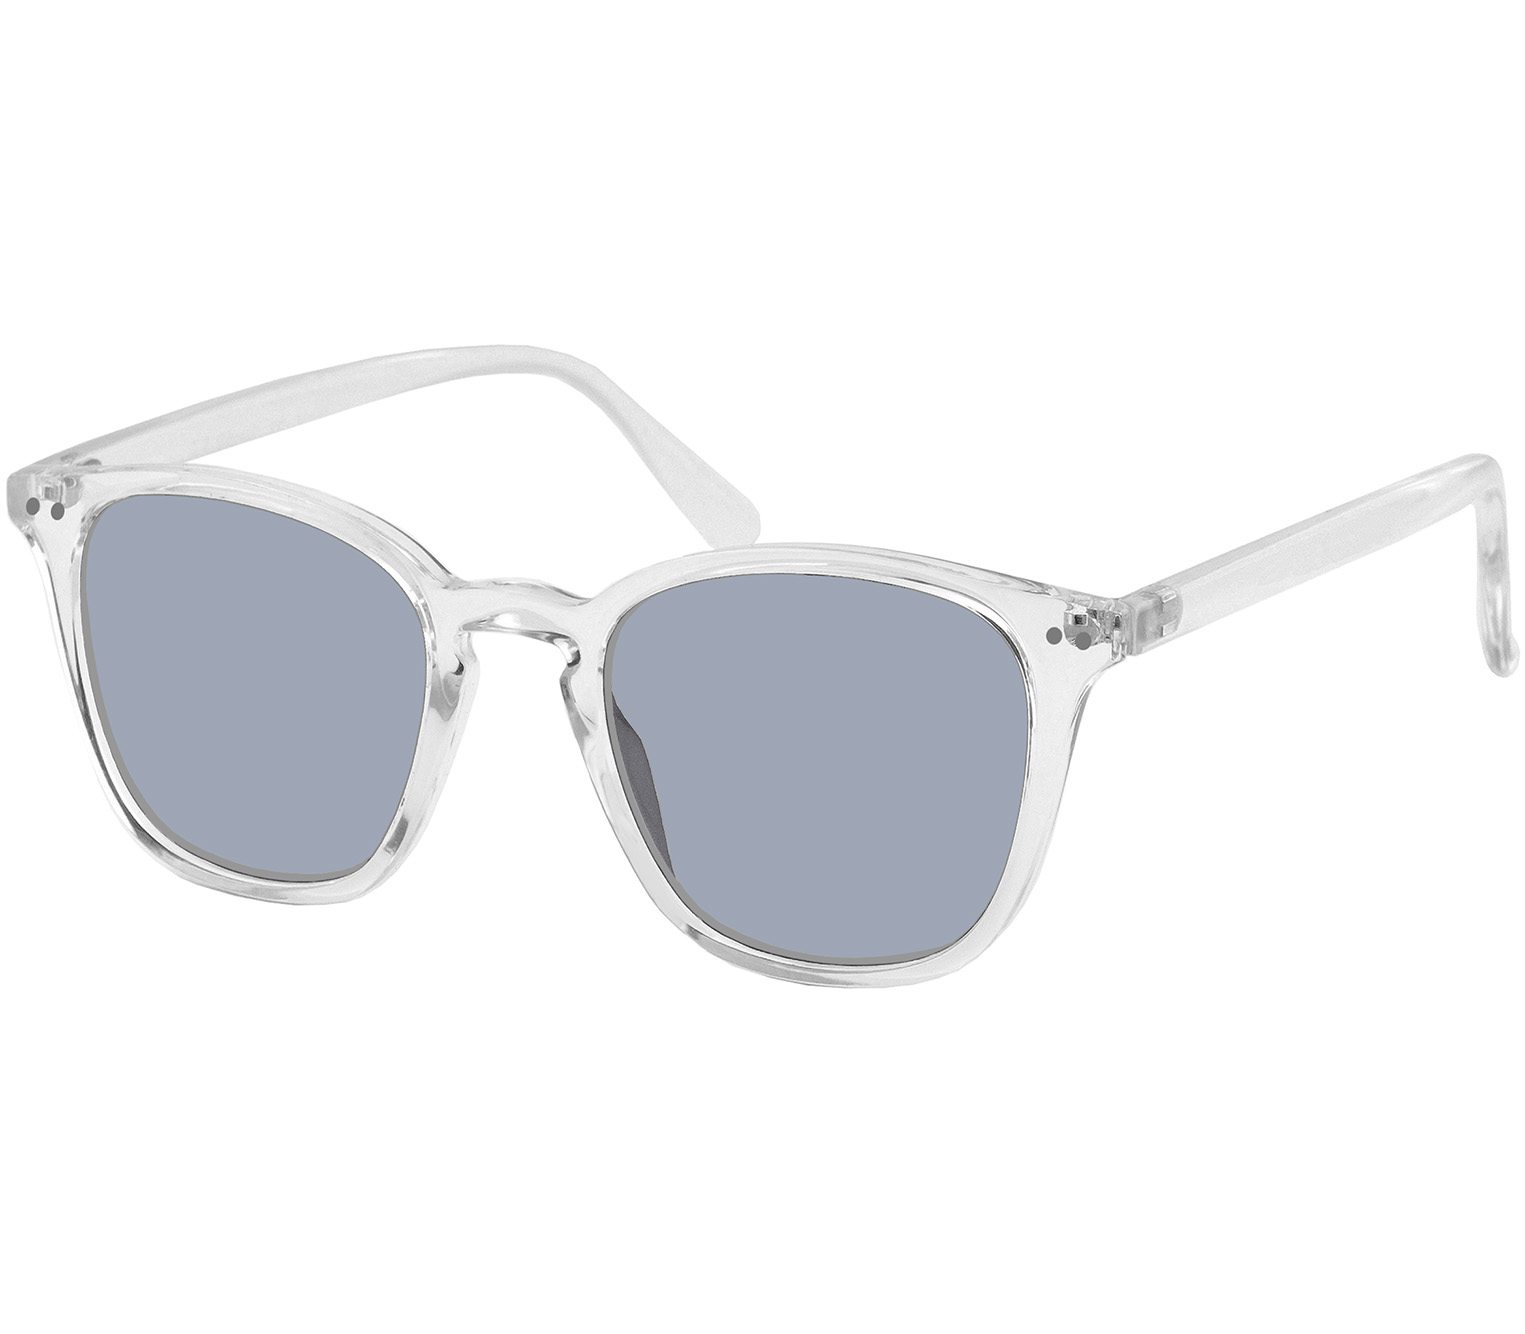 Main Image (Angle) - Genoa (Clear) Retro Sunglasses